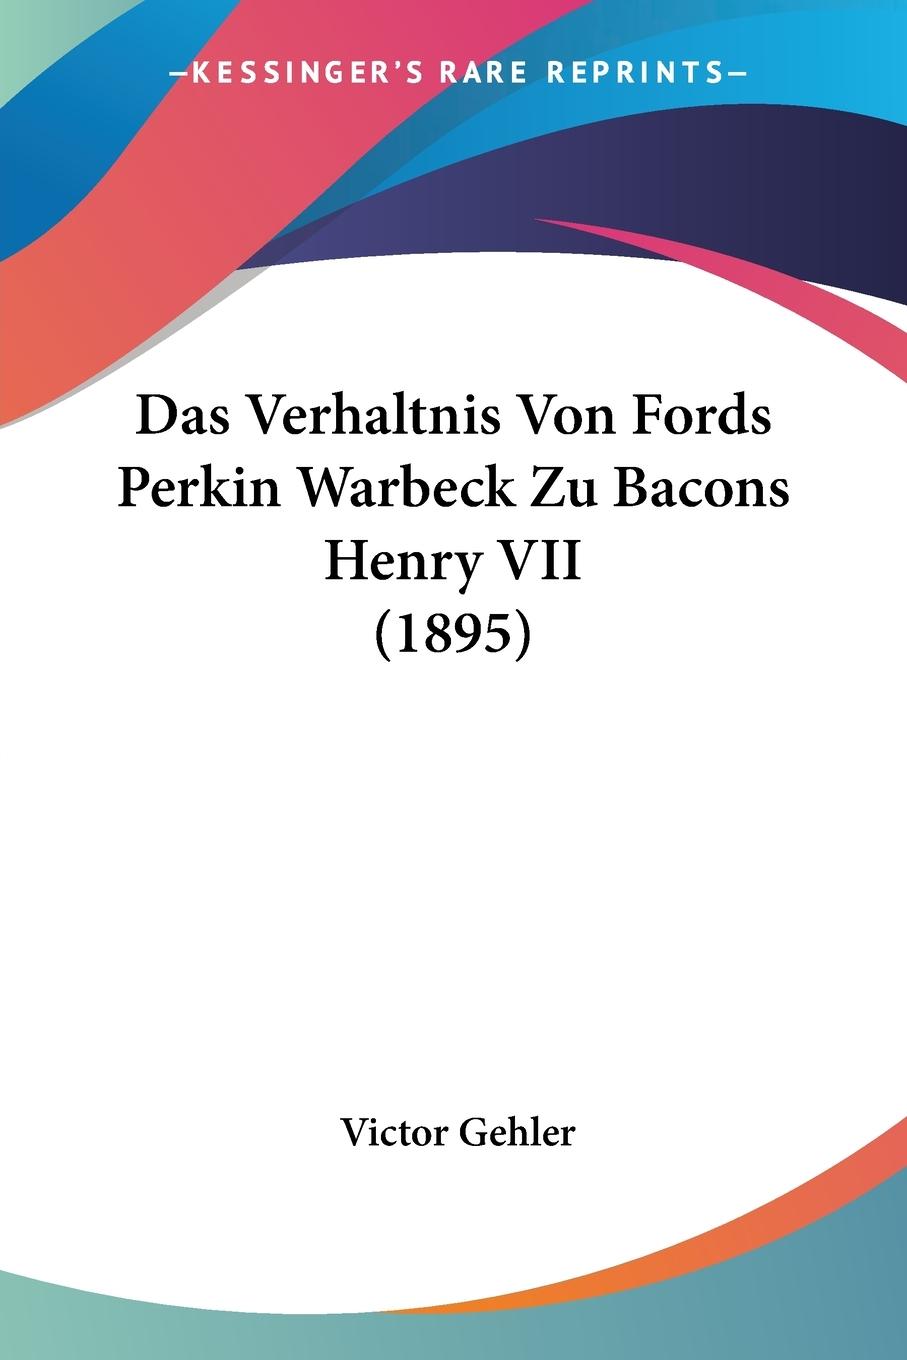 Das Verhaltnis Von Fords Perkin Warbeck Zu Bacons Henry VII (1895) - Gehler, Victor